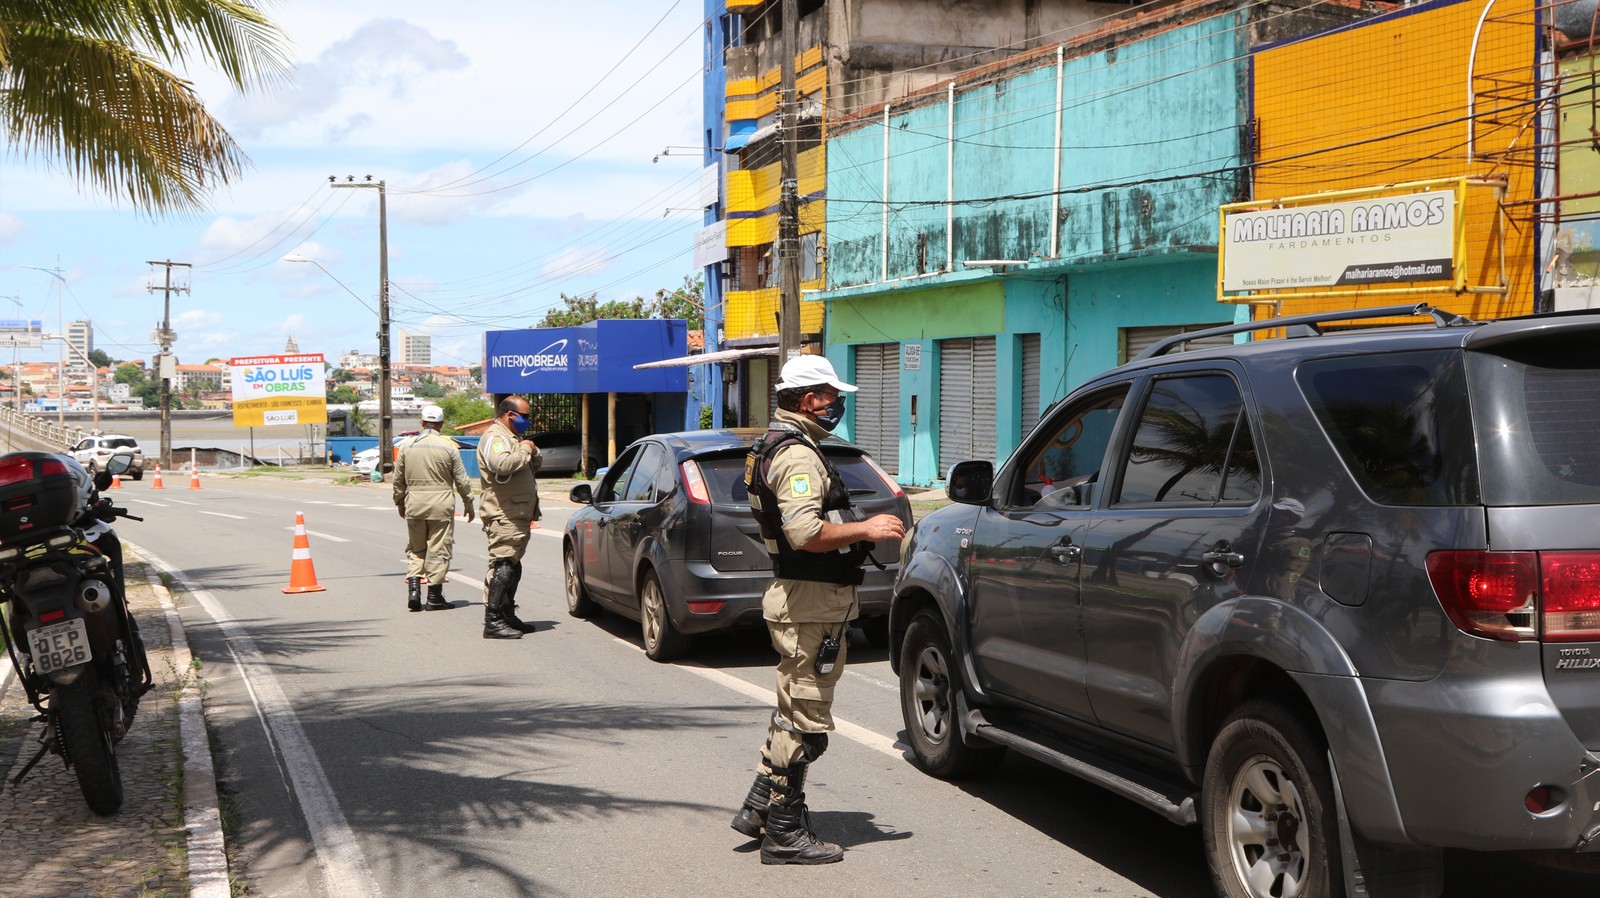 Agentes de trânsito fiscalizam veículos durante o primeiro dia do 'lockdown' em São Luís, Maranhão